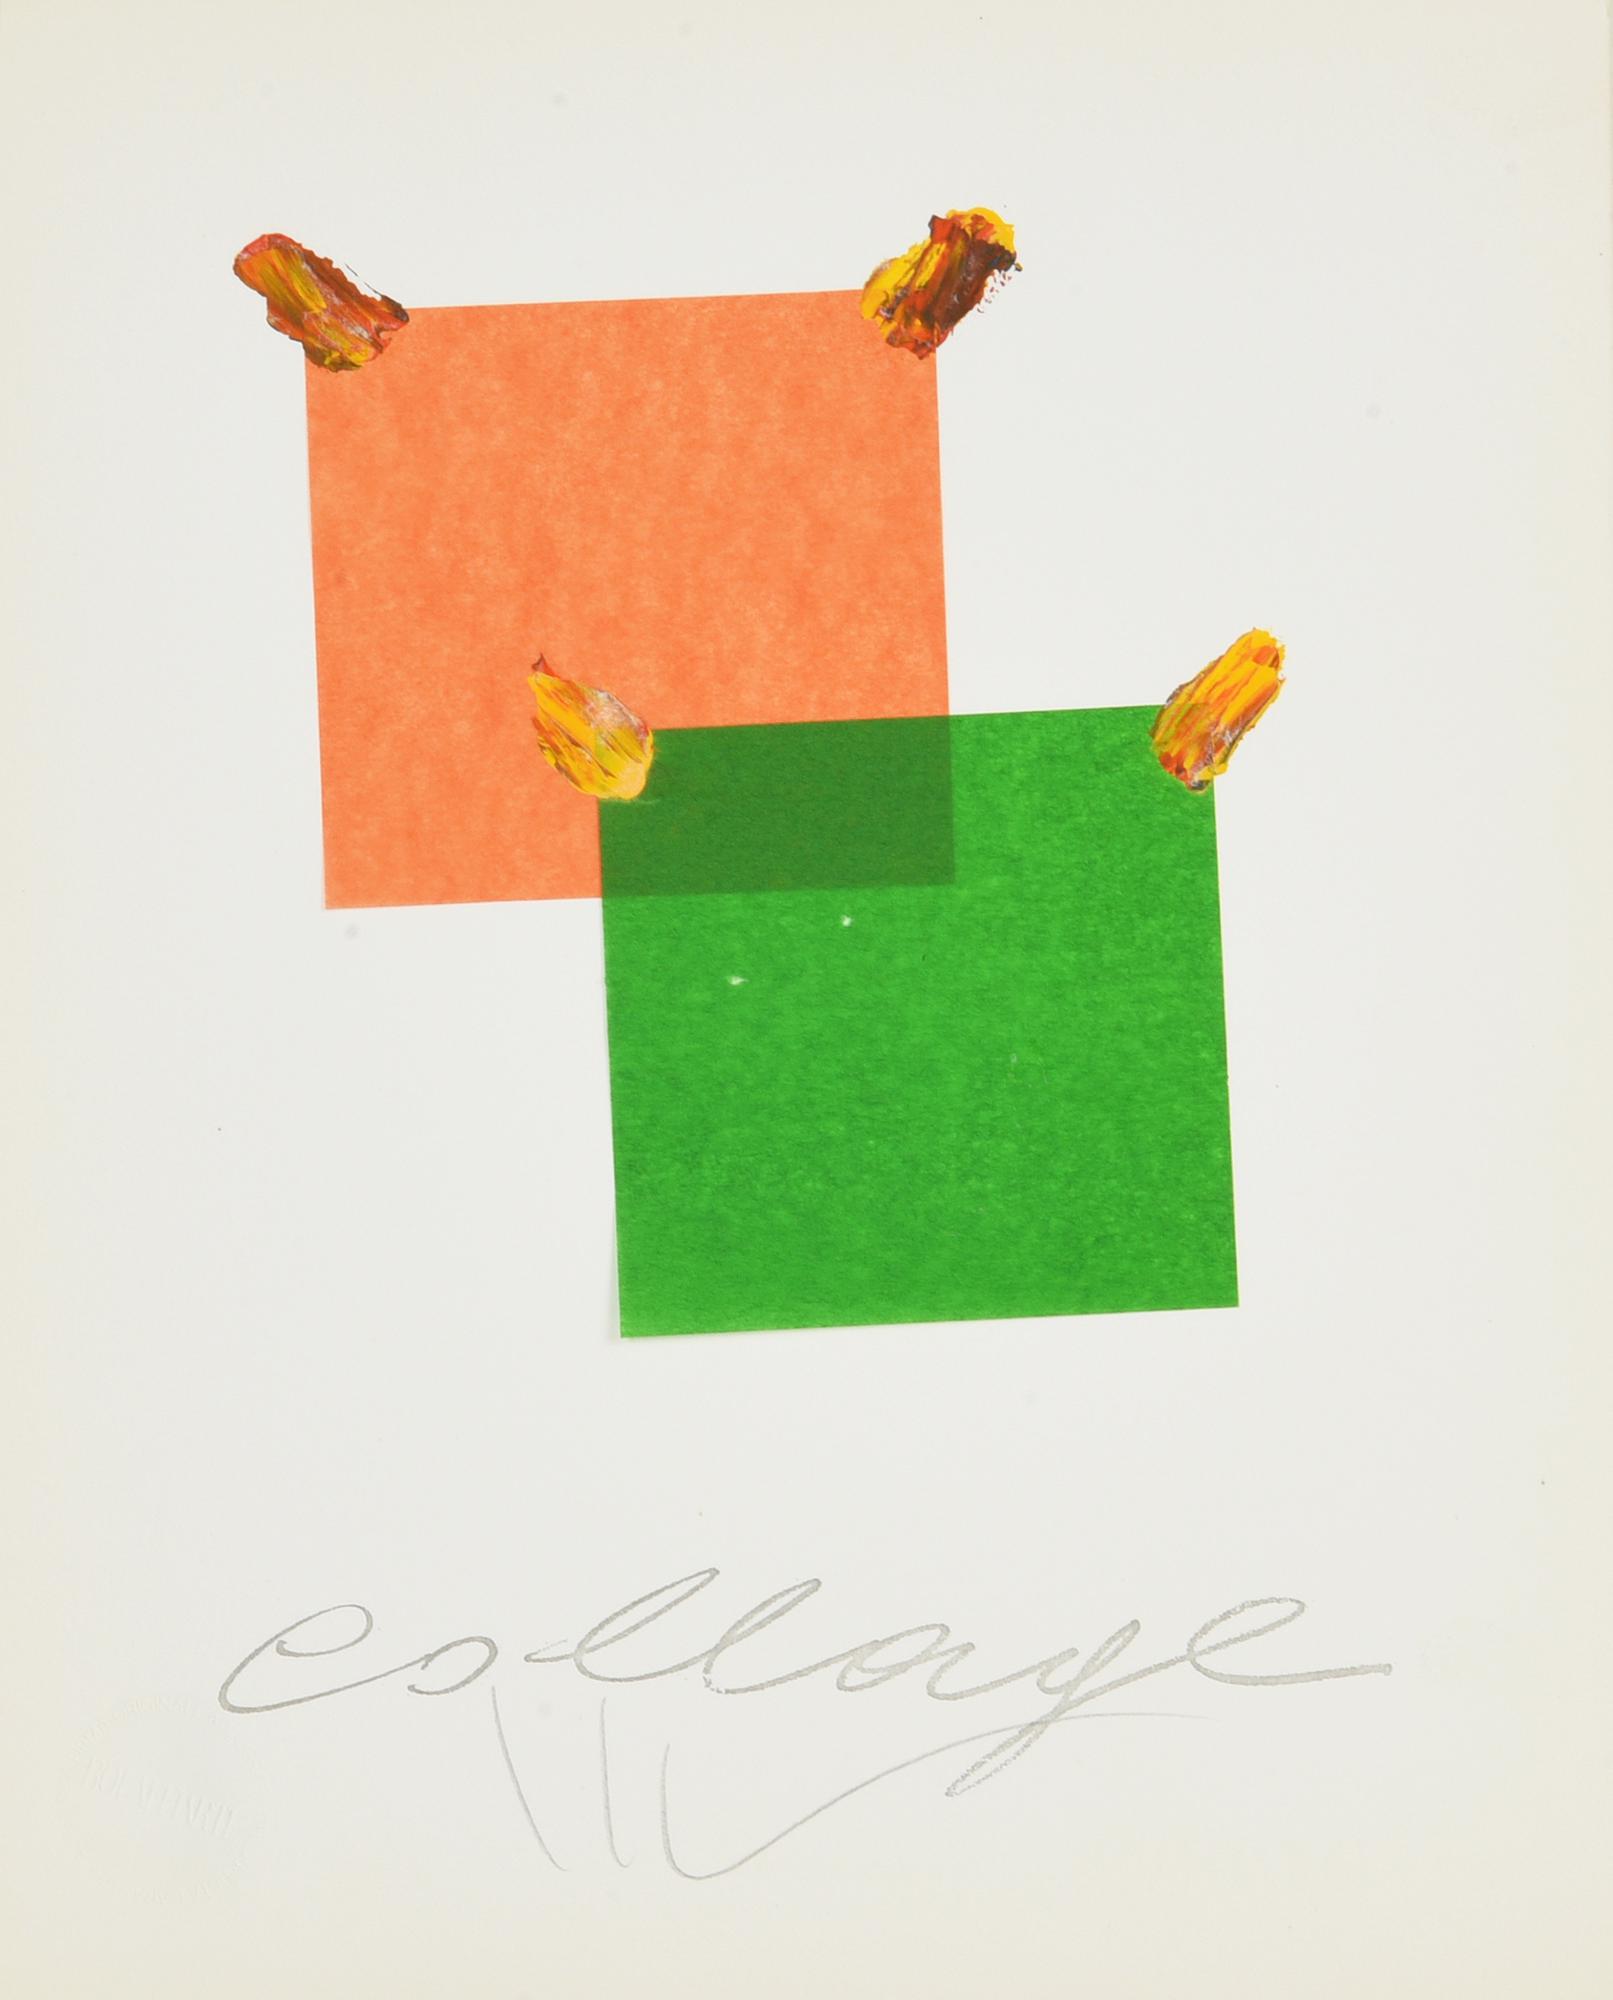 Aldo Mondino (1938 - 2005) COLLAGE multiplo, collage e tempera su carta, cm...